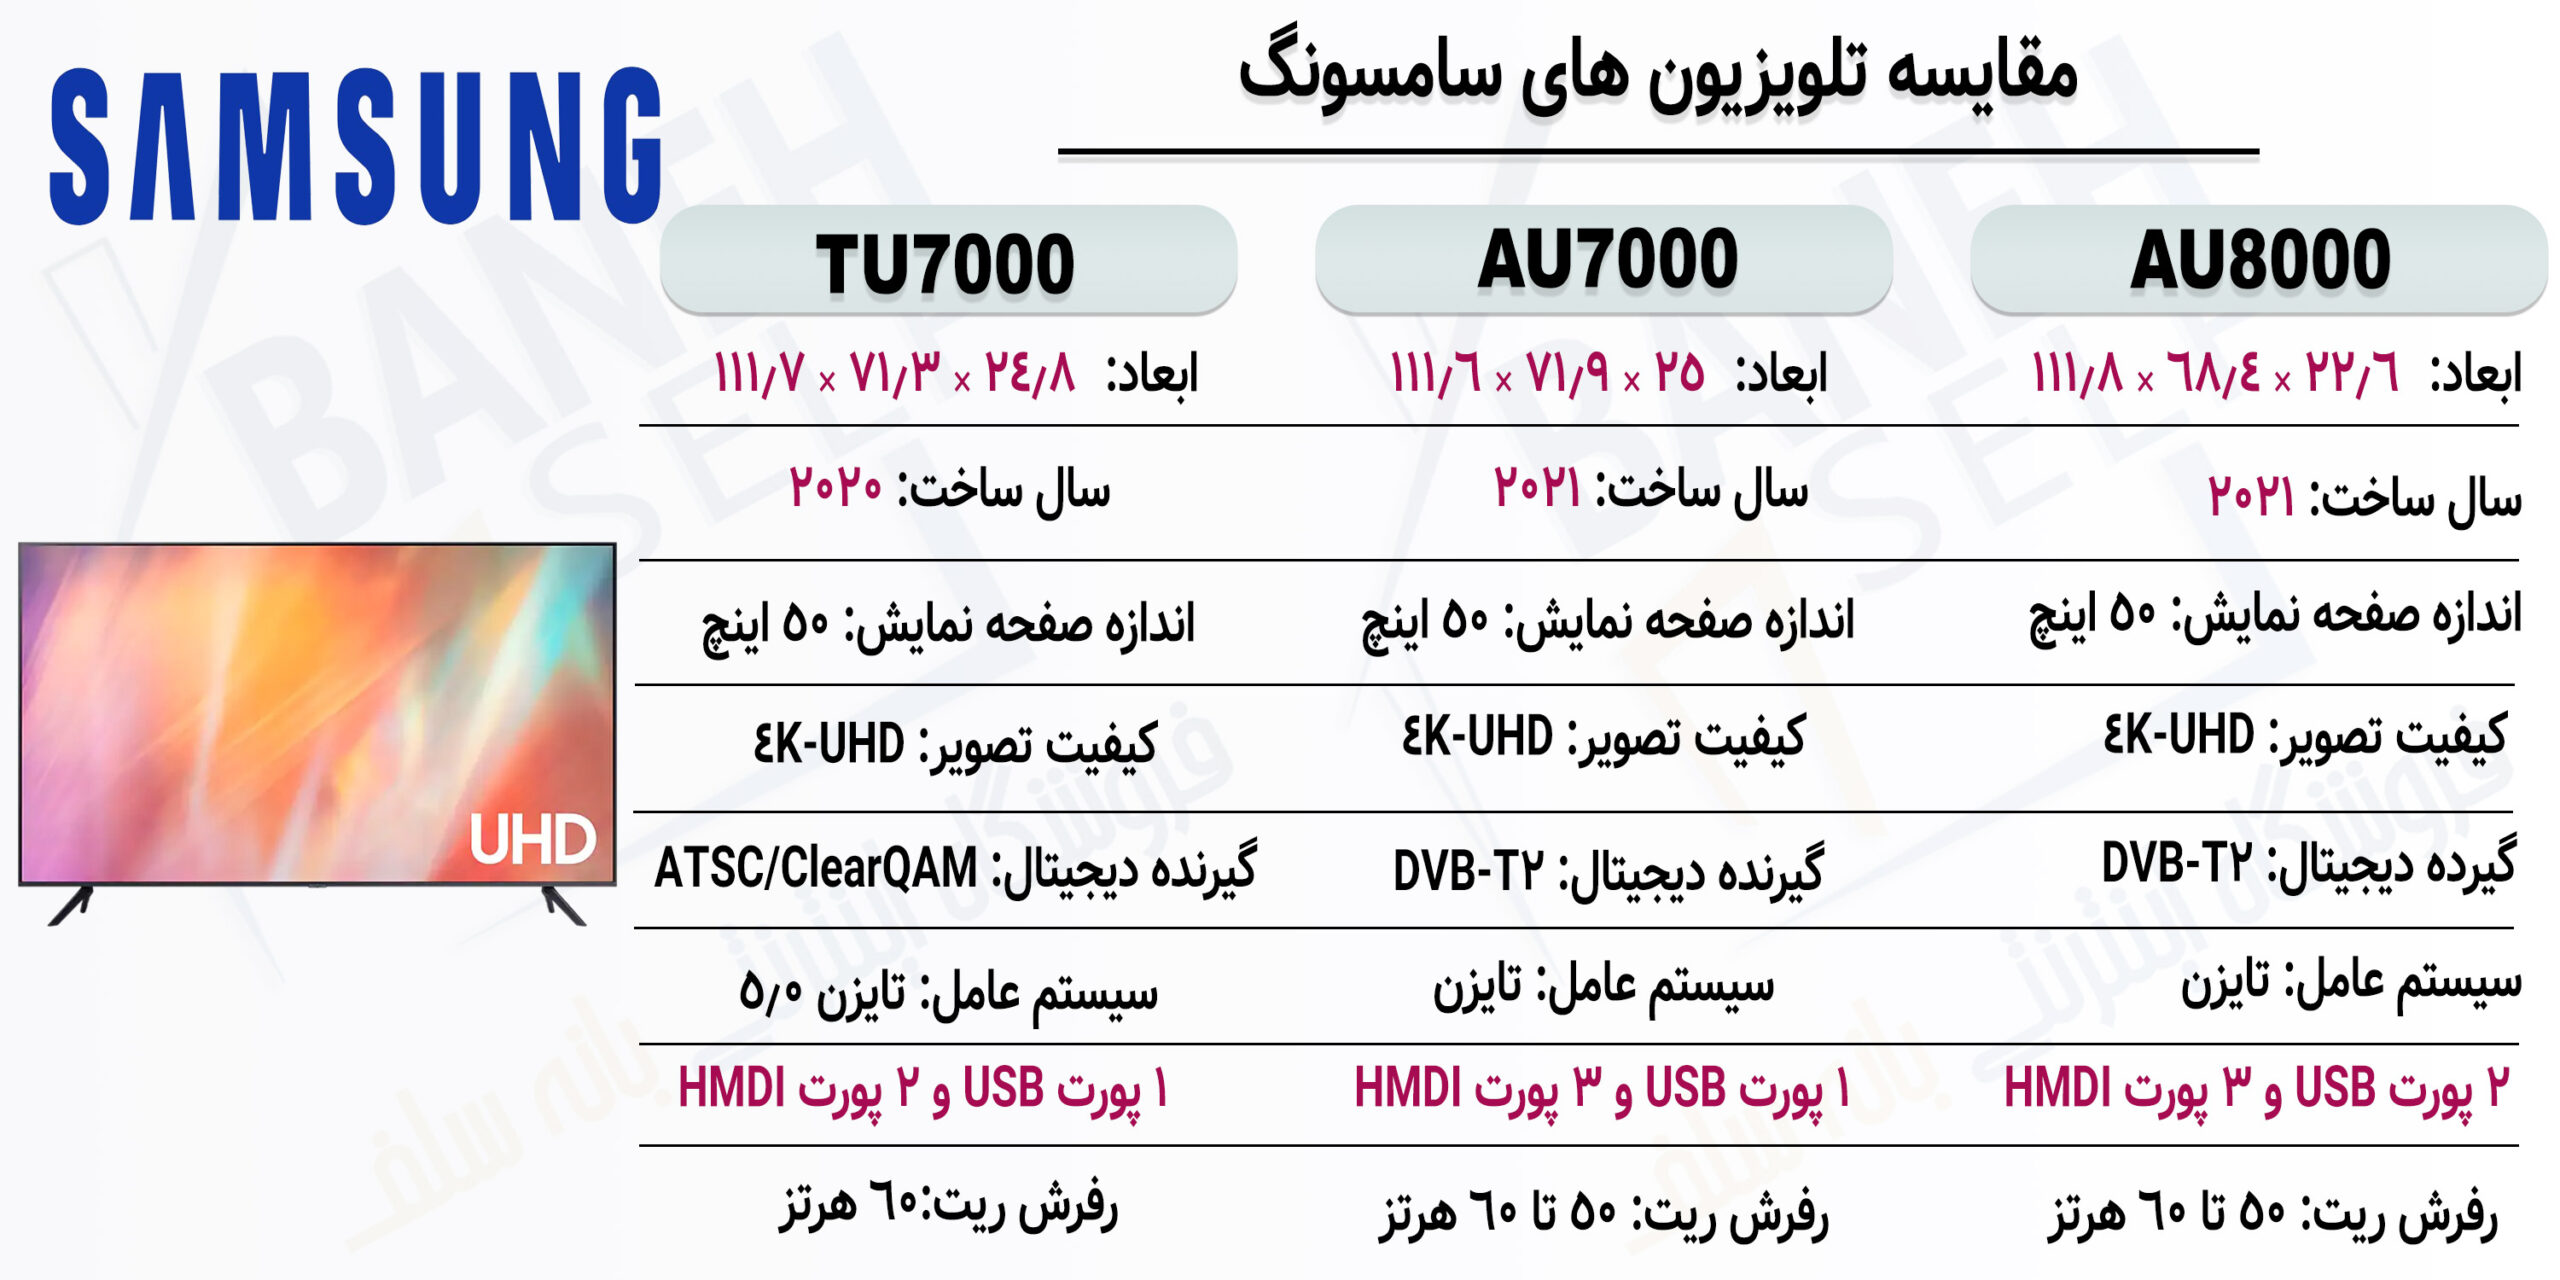 مقایسه-تلویزیون-AU7000-با-تلویزیون-AU8000-1